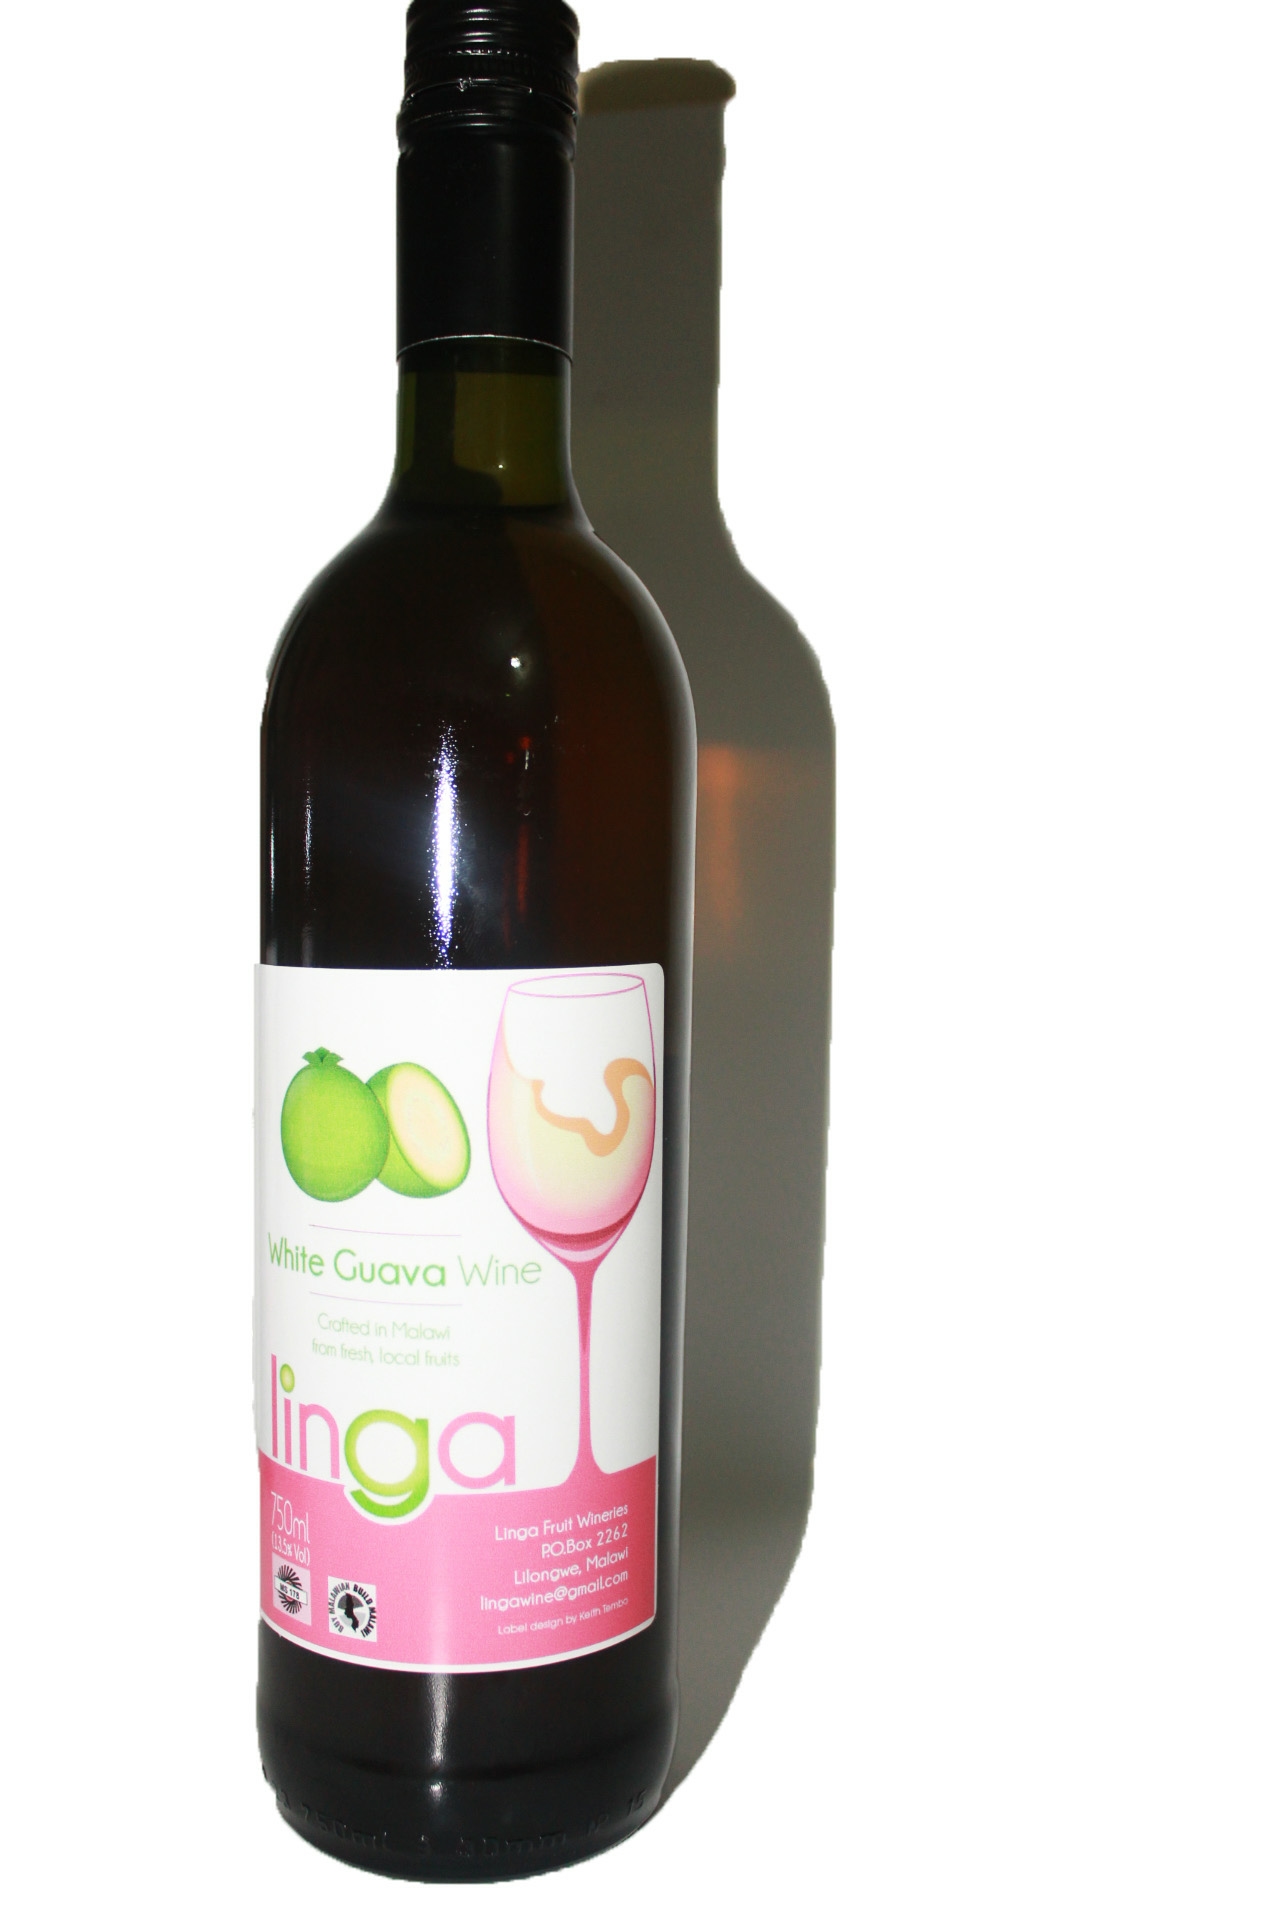 Linga White Guava Wine